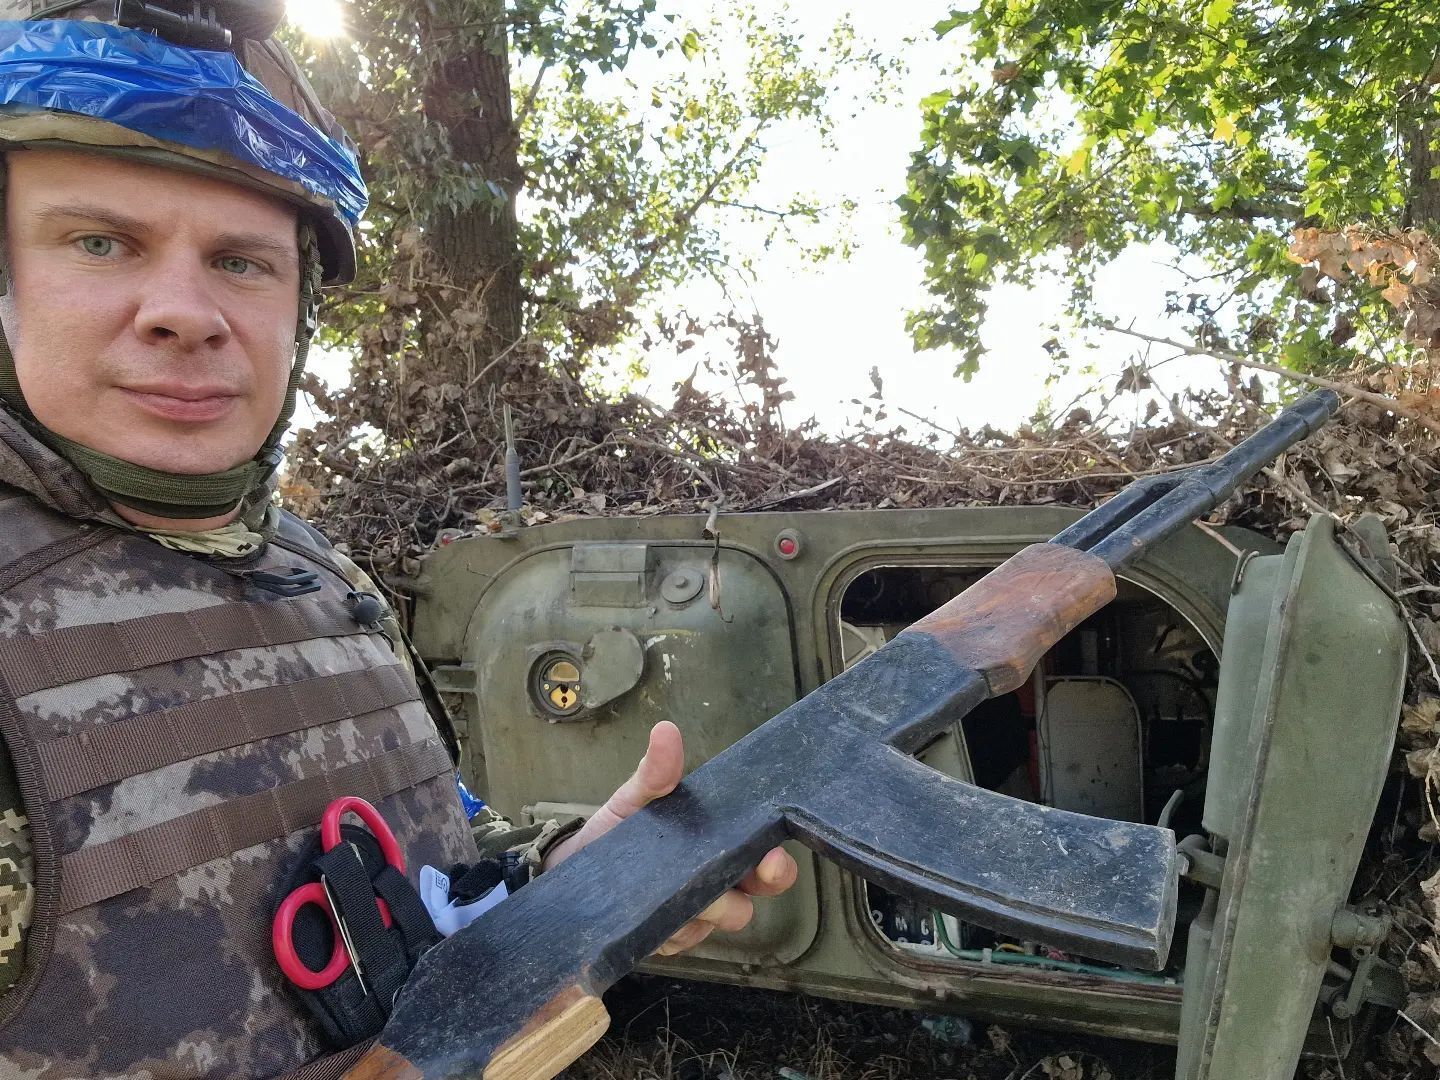 Деревянные ''калаши'' и учебные гранаты: Дмитрий Комаров показал ''оружие'', с которым оккупанты приехали в Украину. Фото